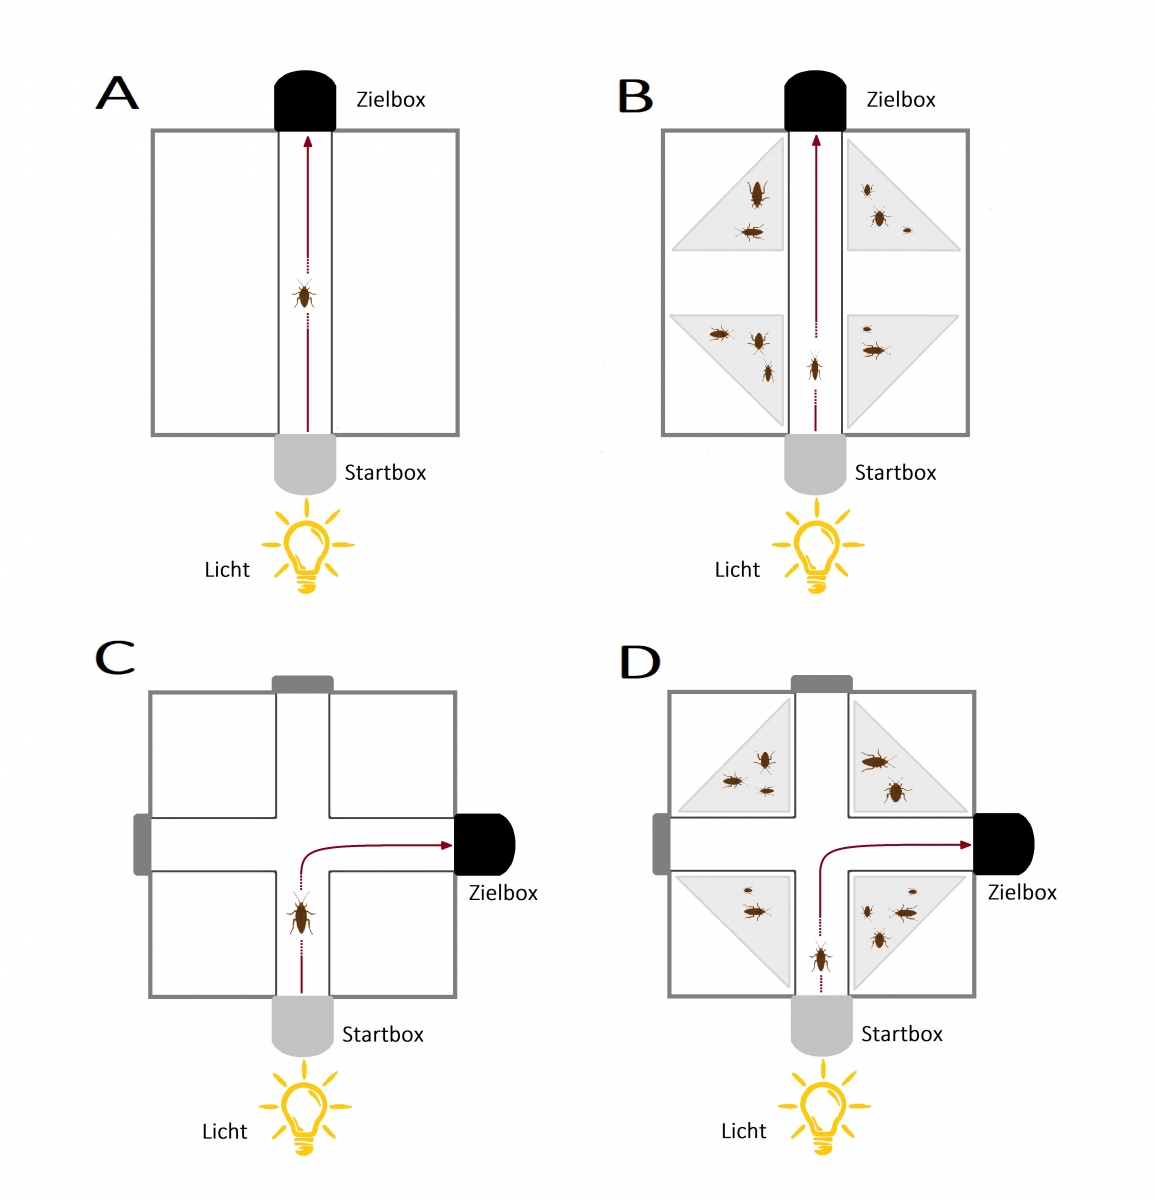 Bild 3: Die verschiedenen Aufgaben des Experiments, von denen jede Kakerlake eine Aufgabe insgesamt zehn Mal hintereinander durchlaufen musste